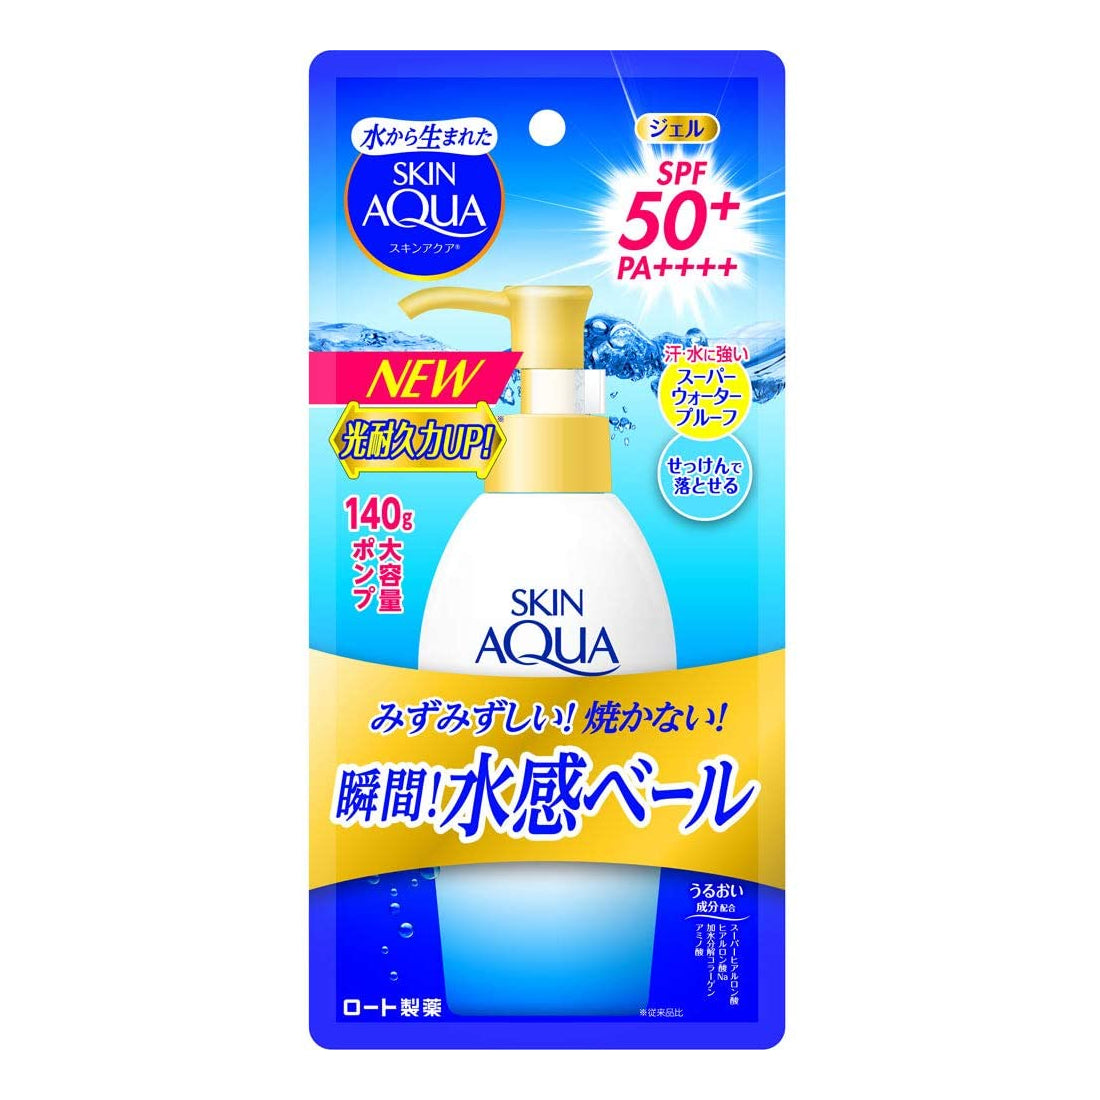 Rohto Skin Aqua UV Super Moisture Gel SPF 50+ PA++++ Beauty Rohto 140g Pump  